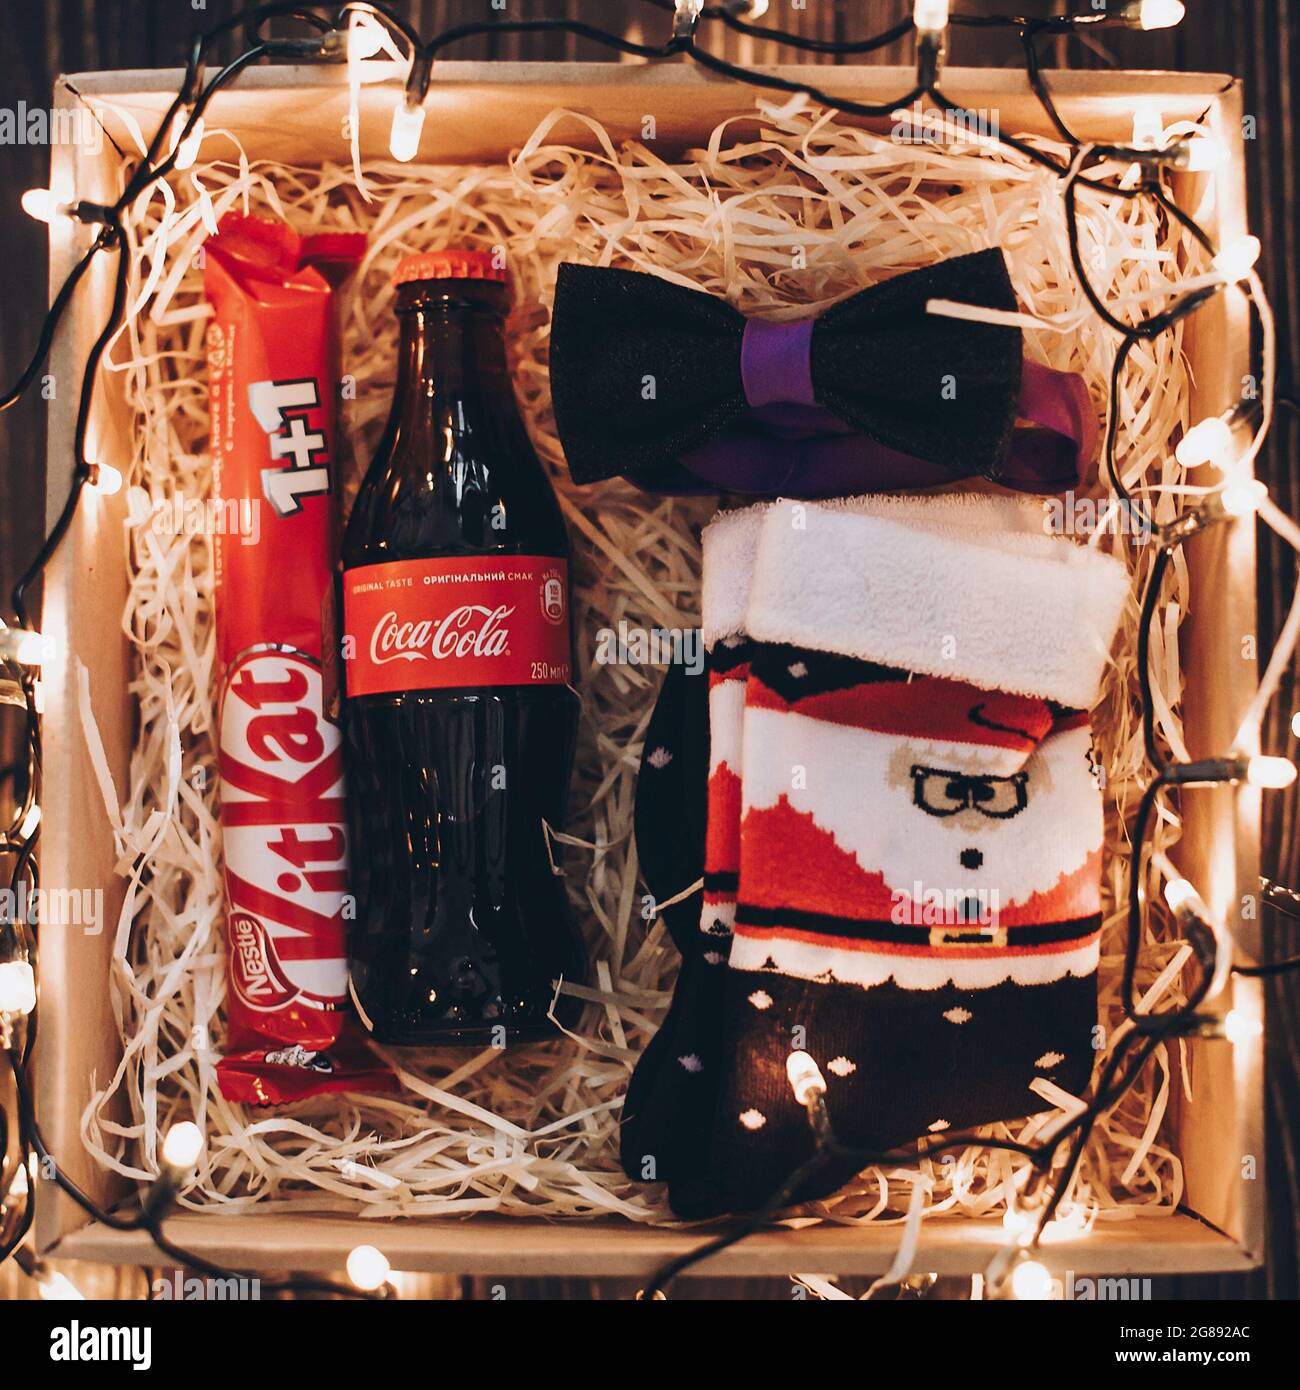 Pour Noël, Coca-Cola transforme ses étiquettes en noeud